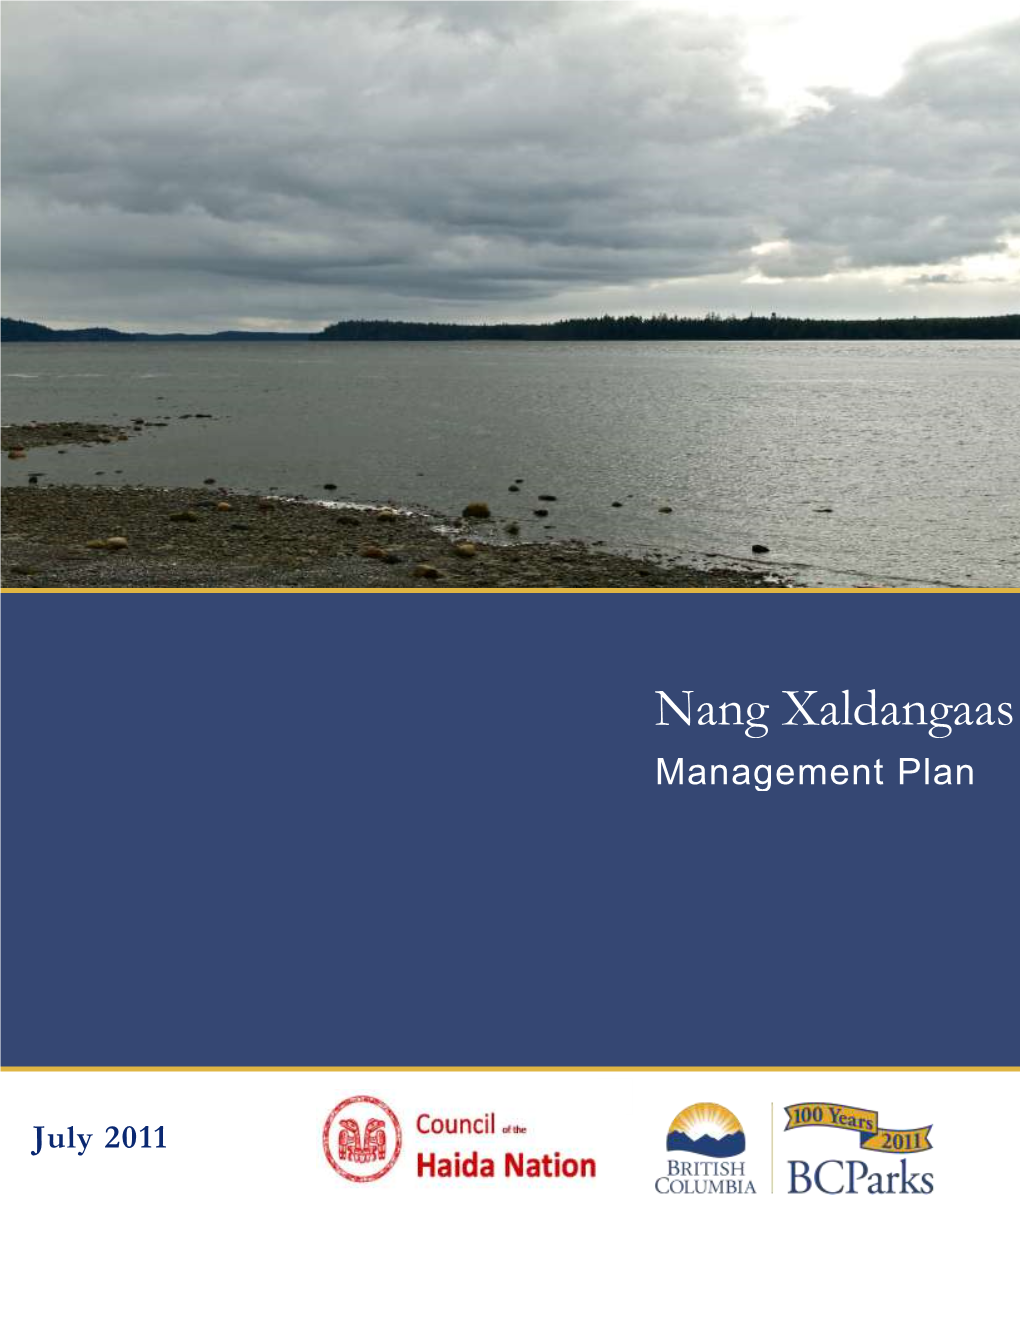 Nang Xaldangaas Heritage Site Management Plan